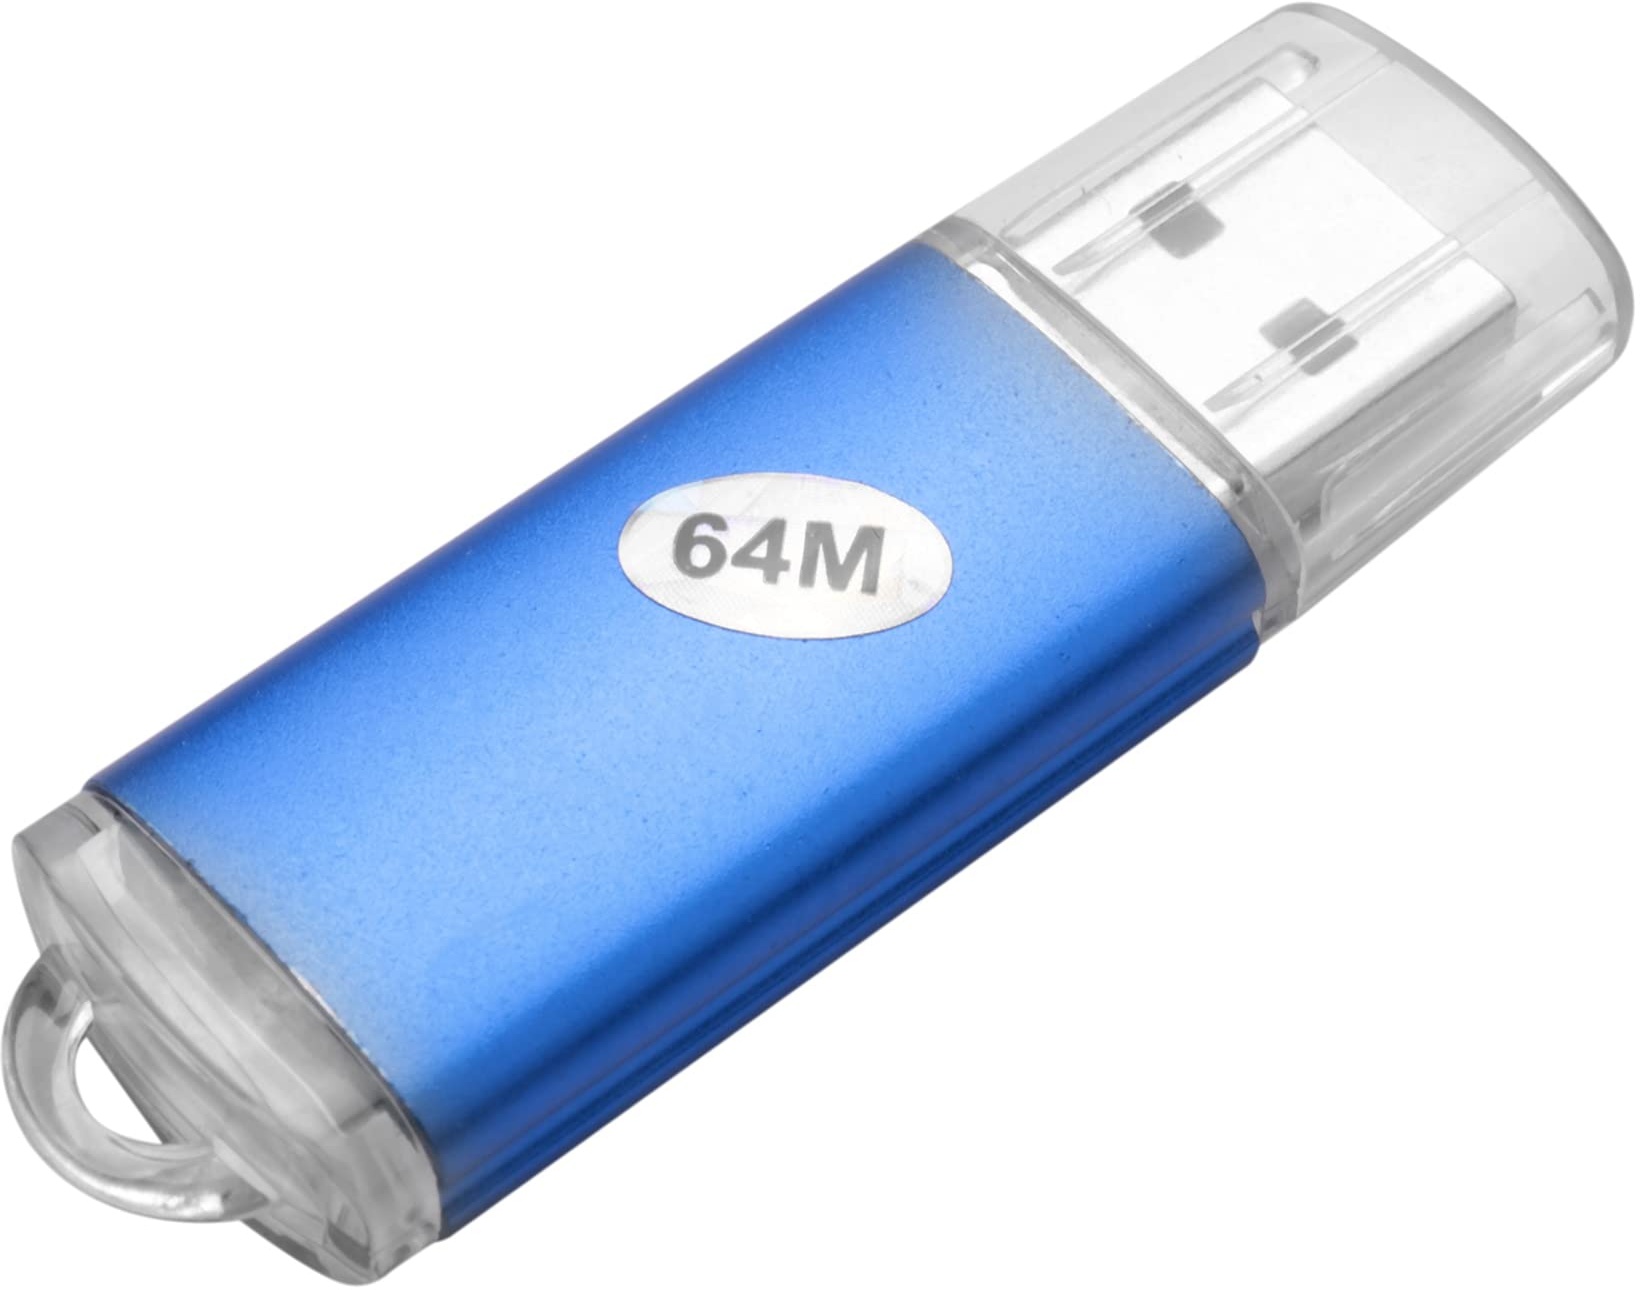 Qwertfeet 64 MB USB 2.0-Flash-Speicherstick Thumb Drive PC Laptop-Speicher